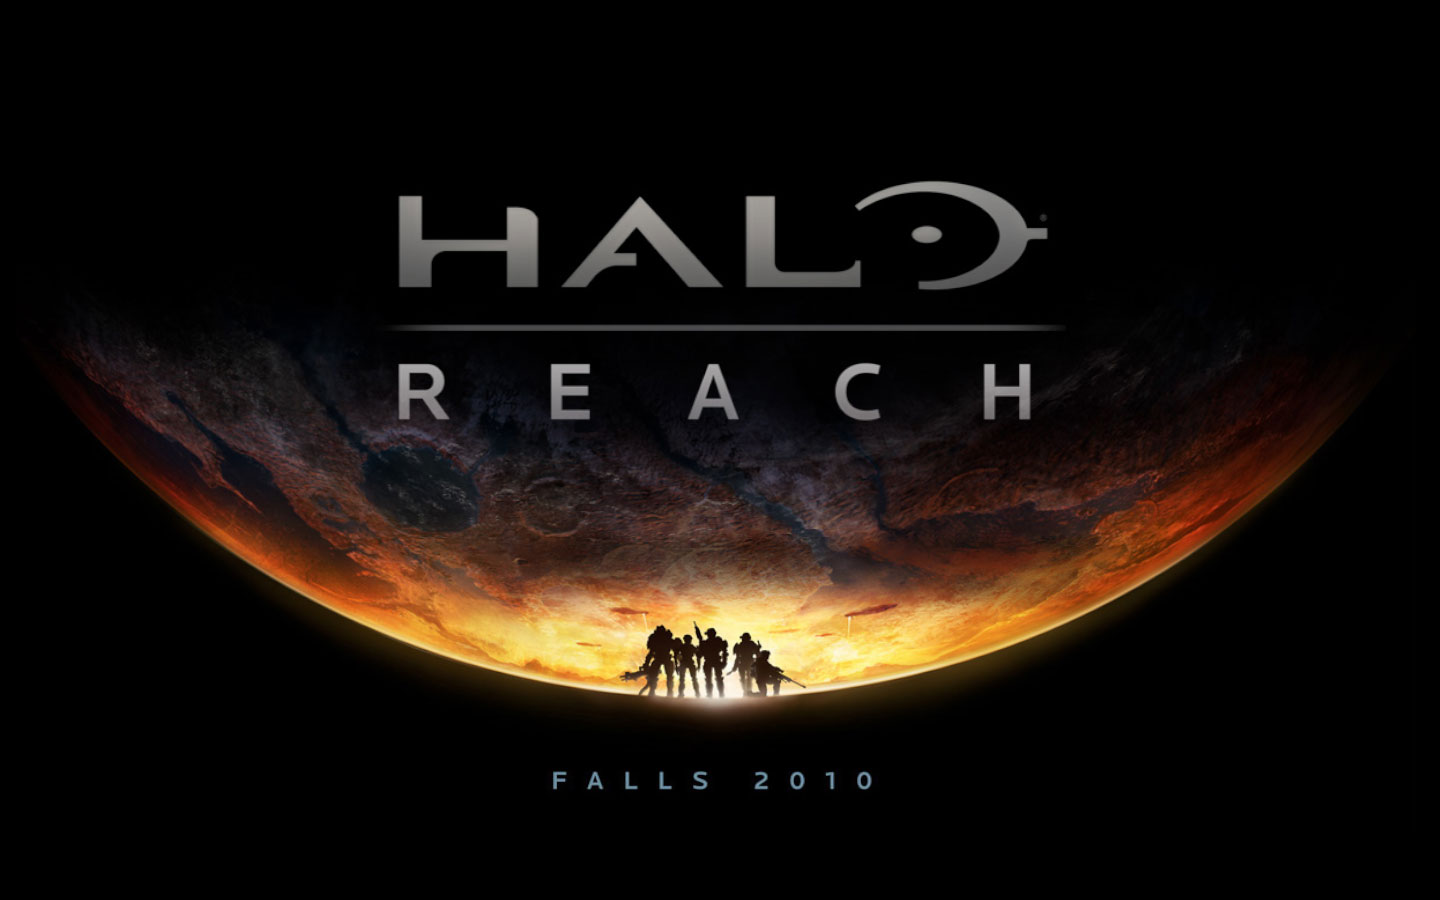 Imagen   Halo reach wallpaperjpg   Halopedia